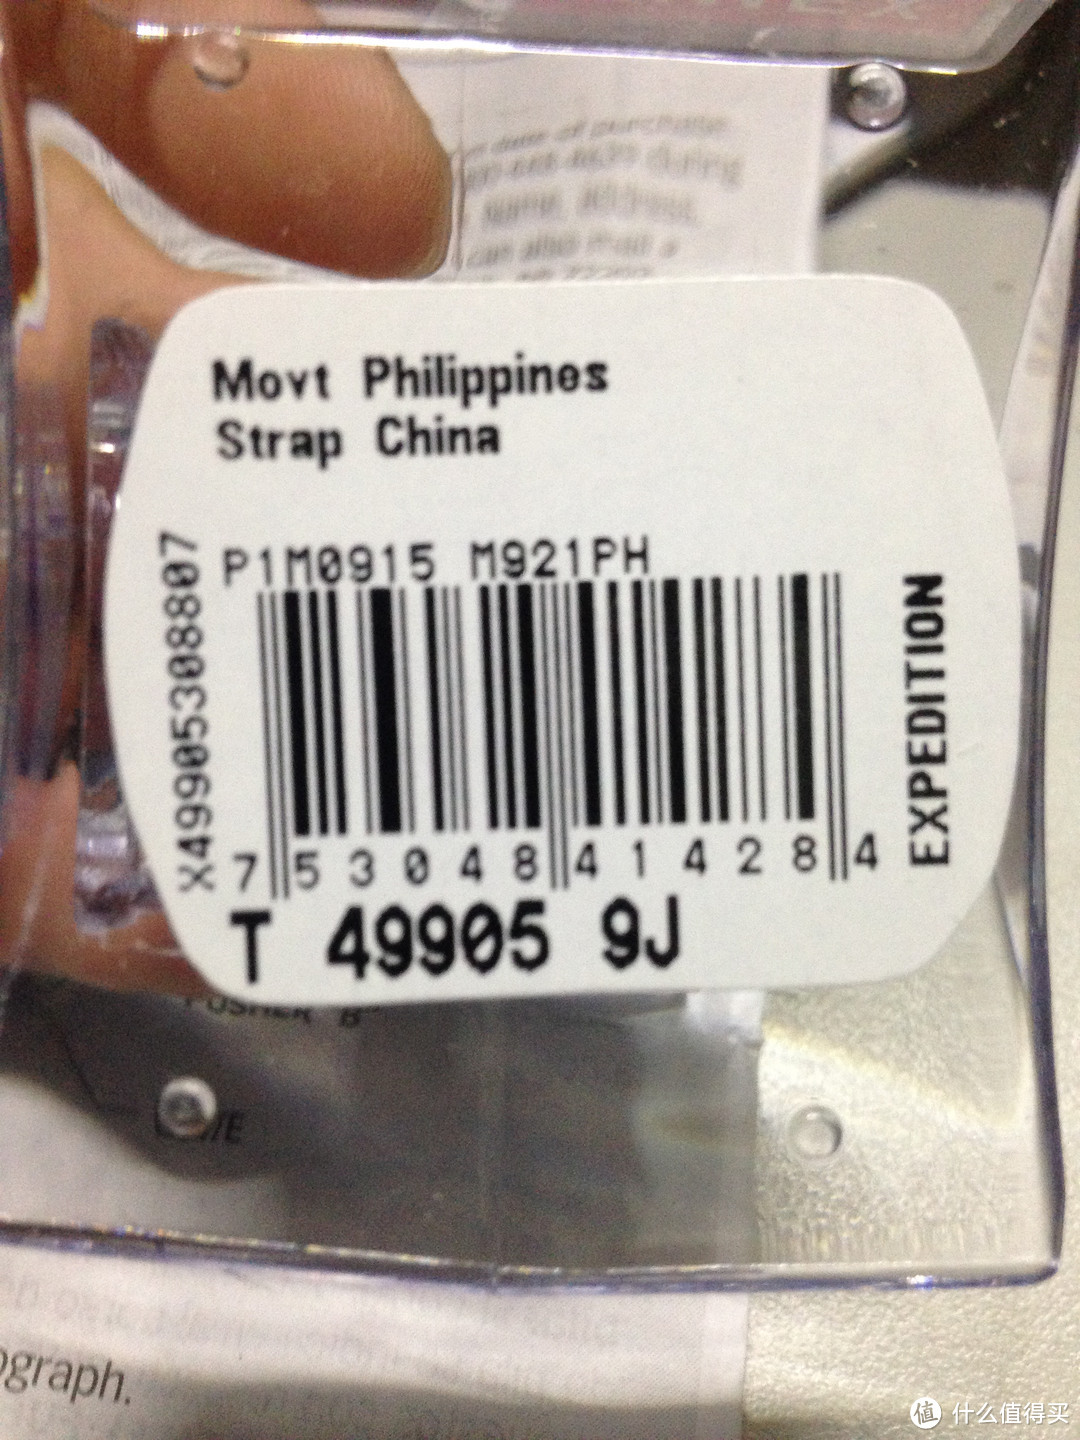 机芯是菲律宾产的，表带是中国产的